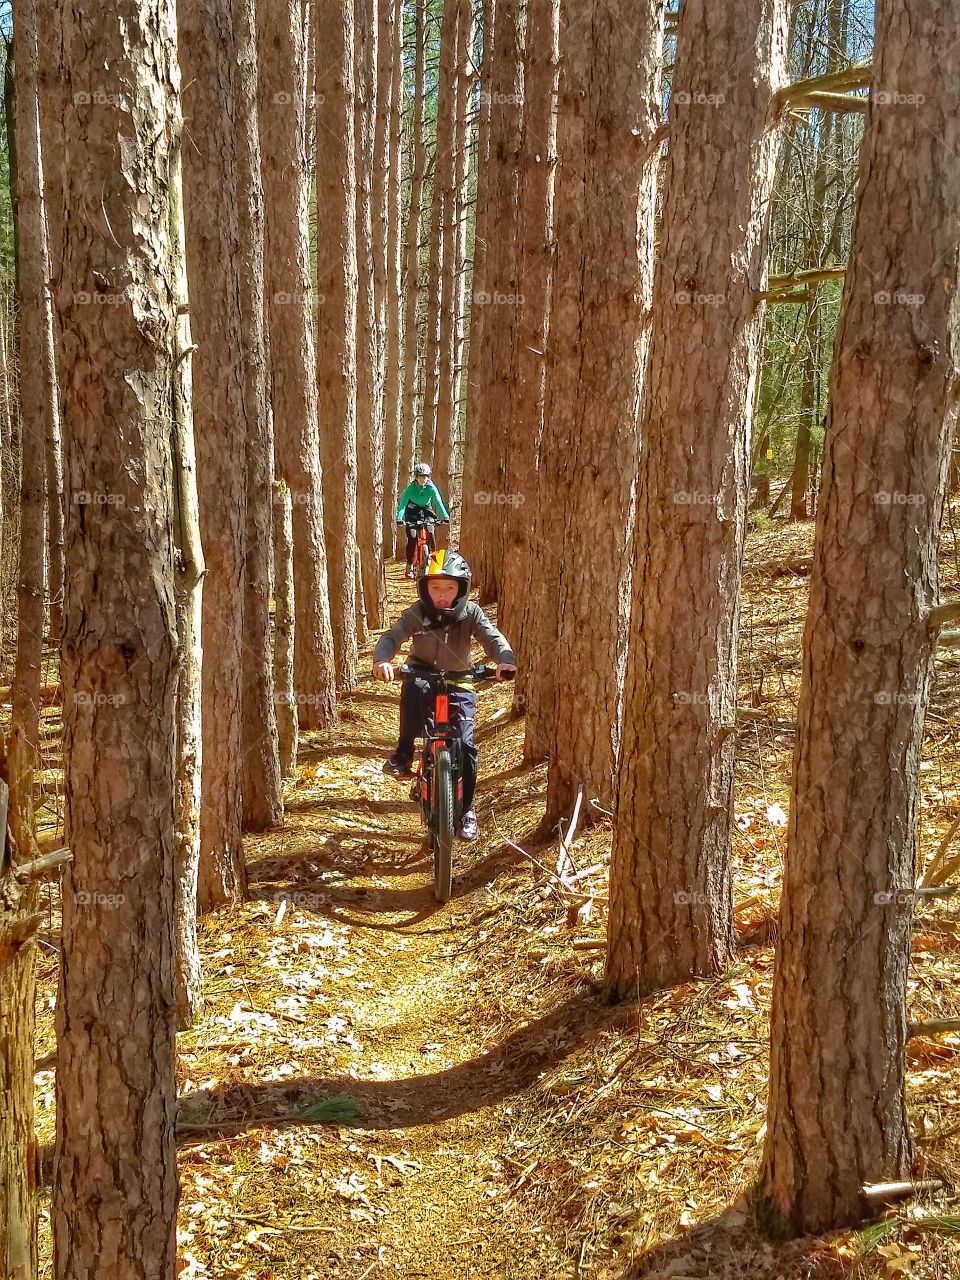 Child mountain biking through forest